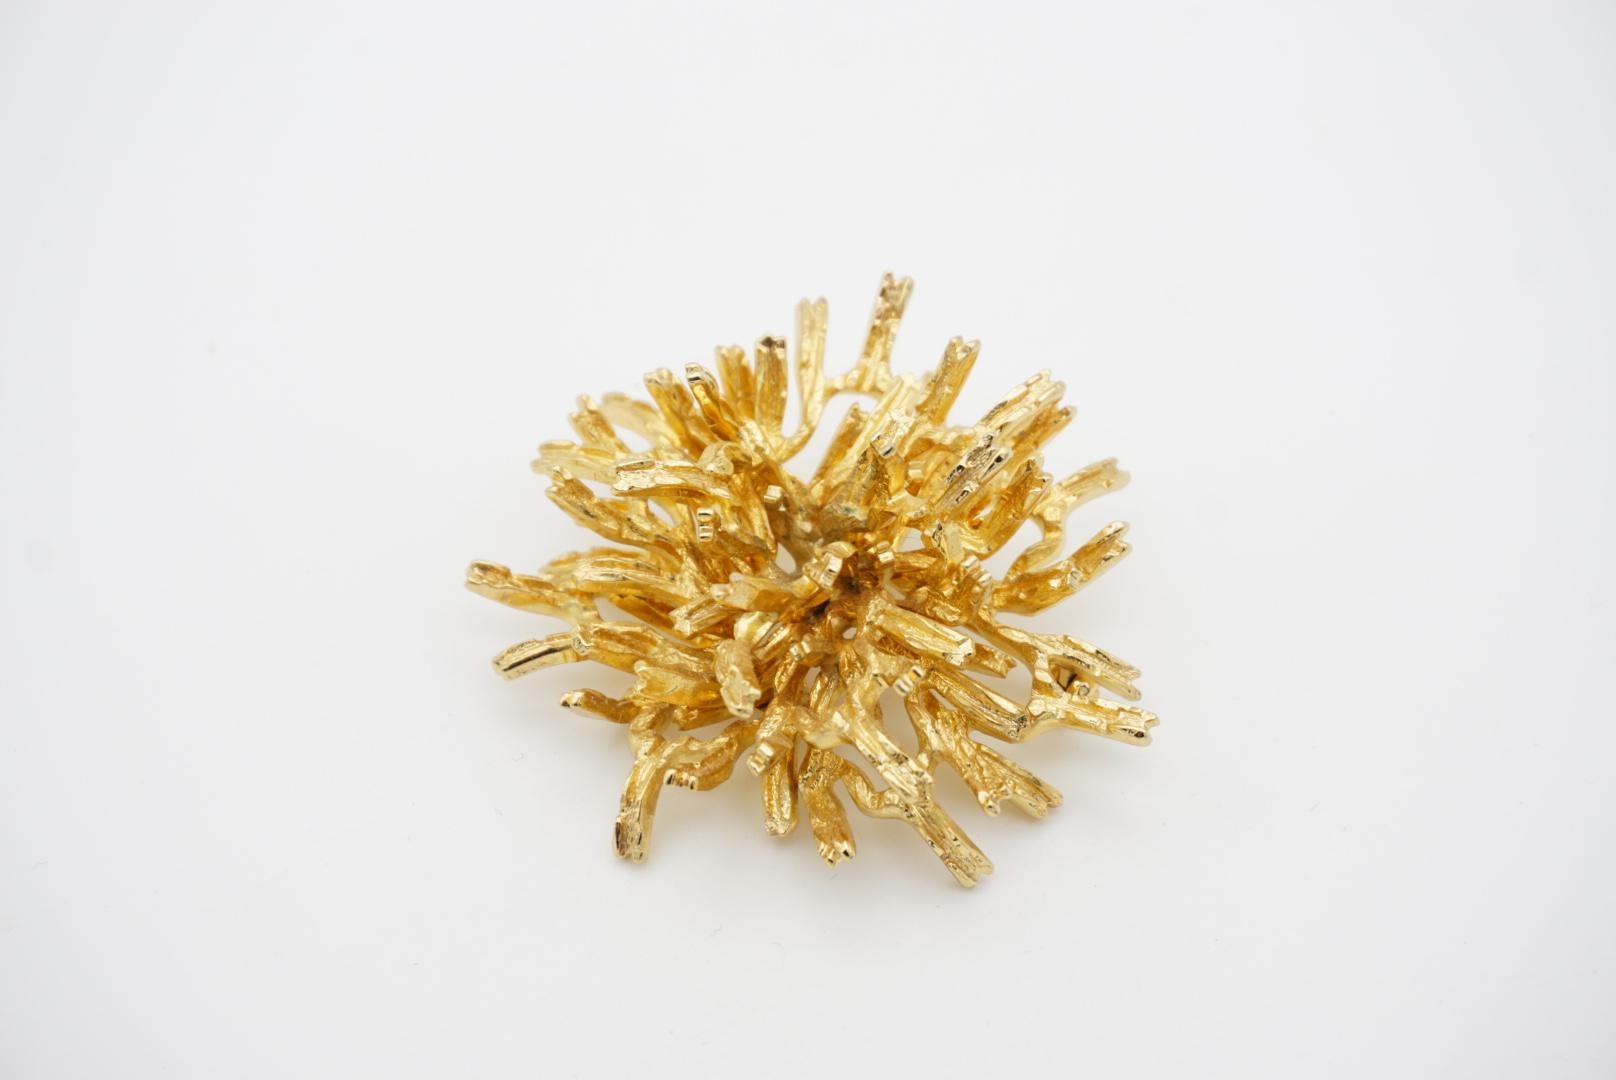 Christian Dior GROSSE 1967 Vintage Large Coral Flower Gold Exquisite Brooch For Sale 3